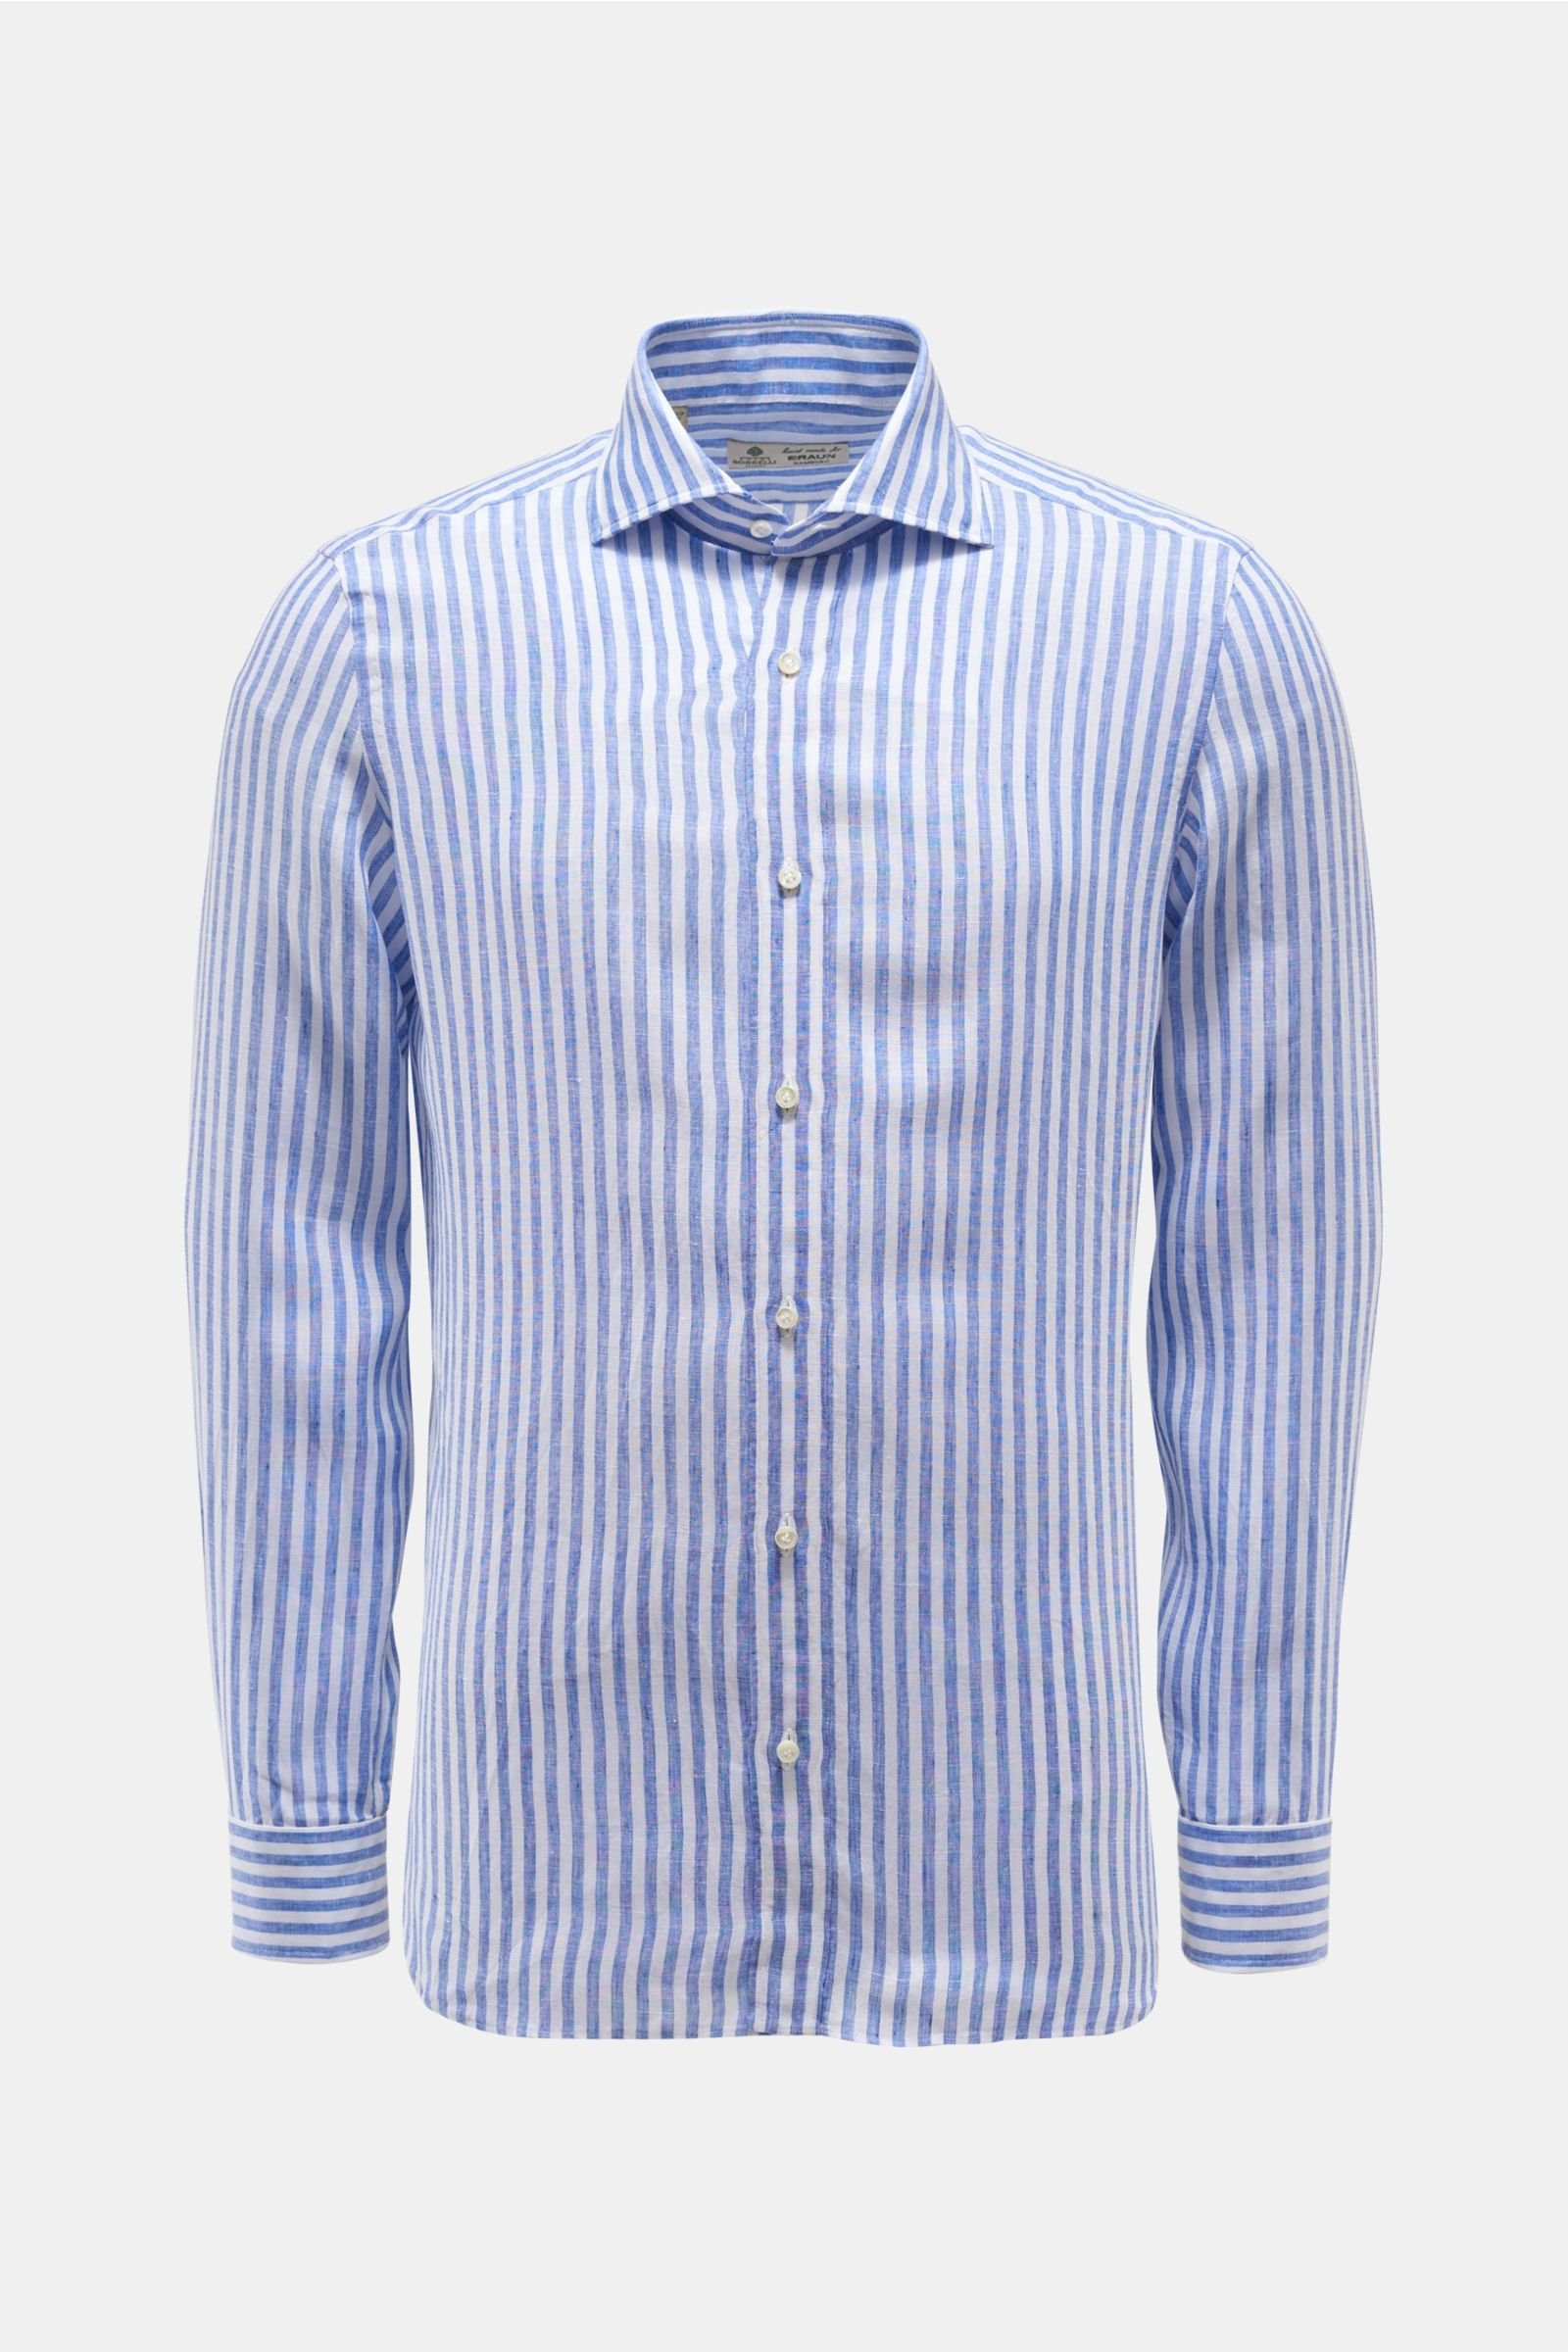 Linen shirt shark collar blue/white striped